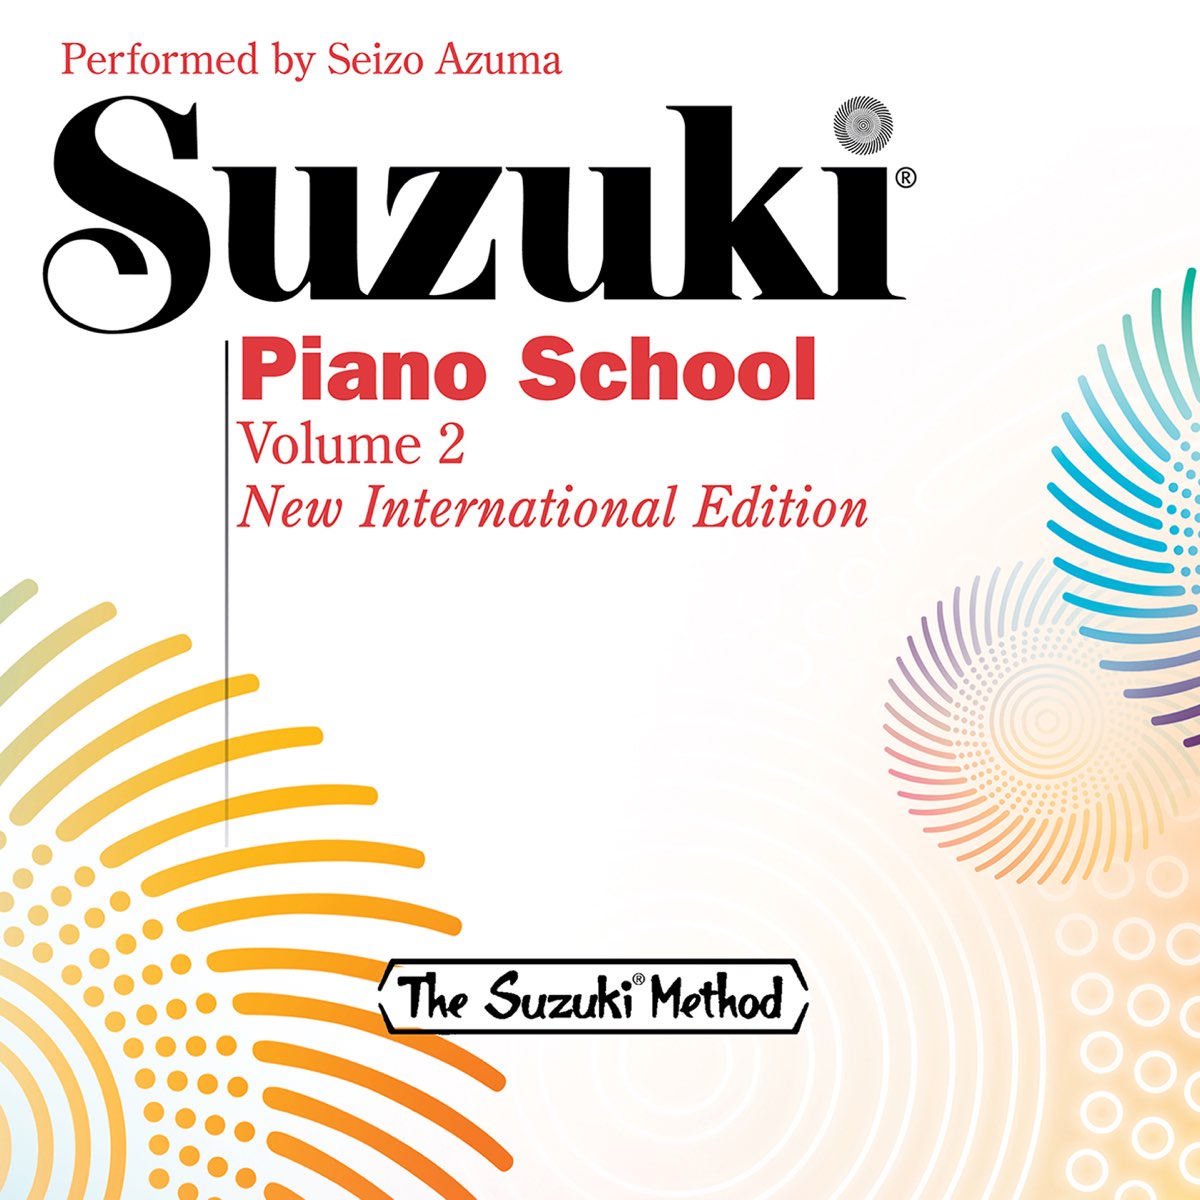 Suzuki Piano School, Vol. 2 - Album by Seizo Azuma - Apple Music